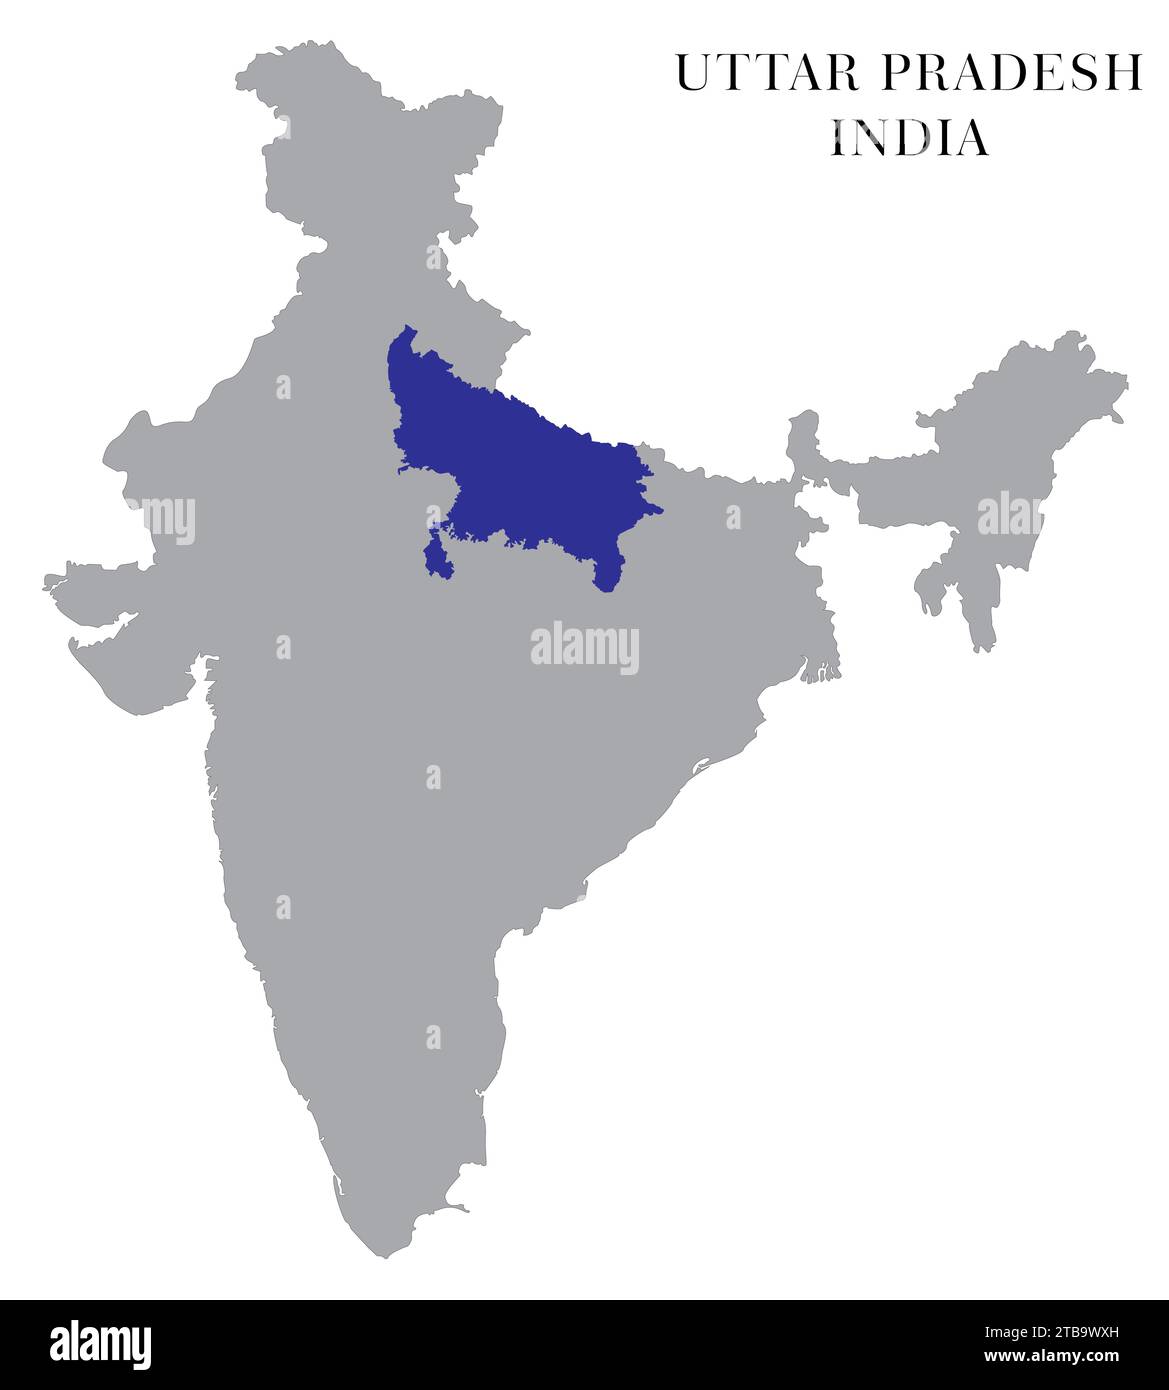 Uttar Pradesh Highlighted in India Map vector illustration Stock Vector